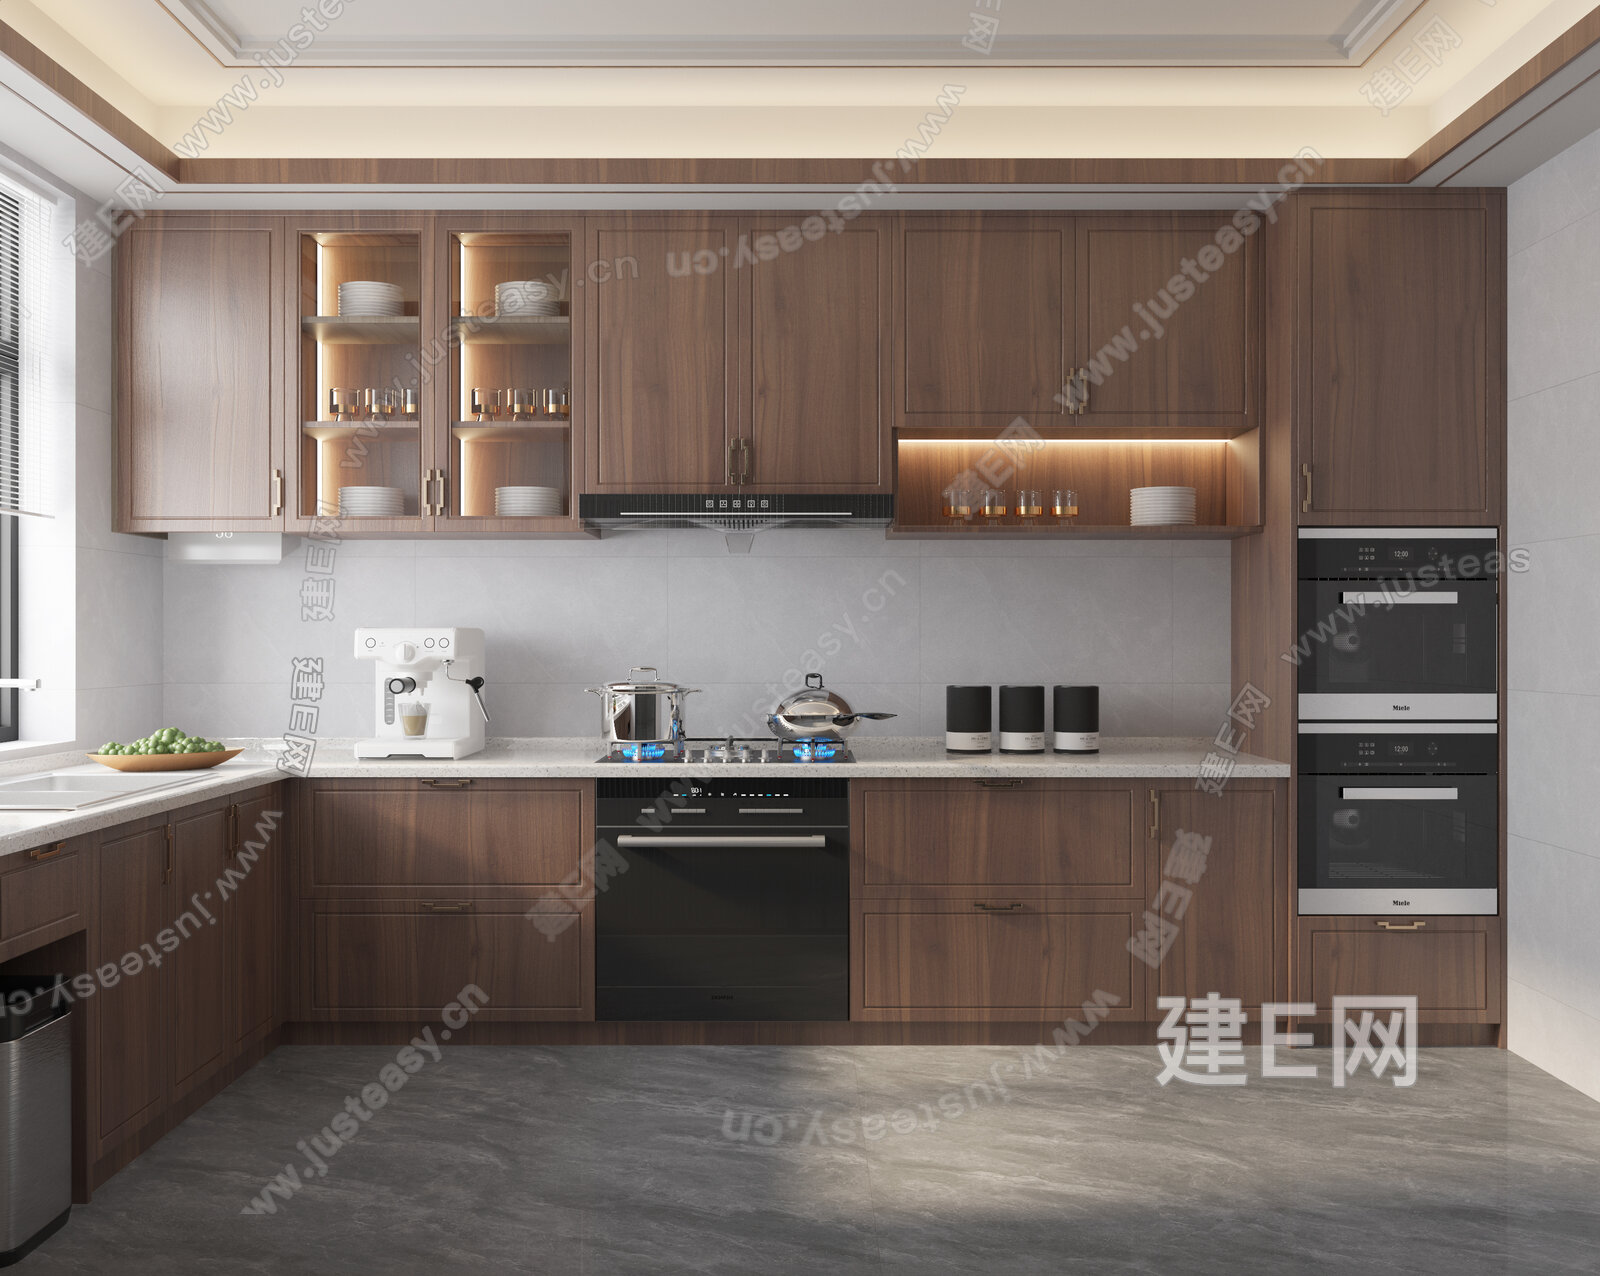 厨房设计图片(日式最合理的厨房设计欣赏)_视觉癖